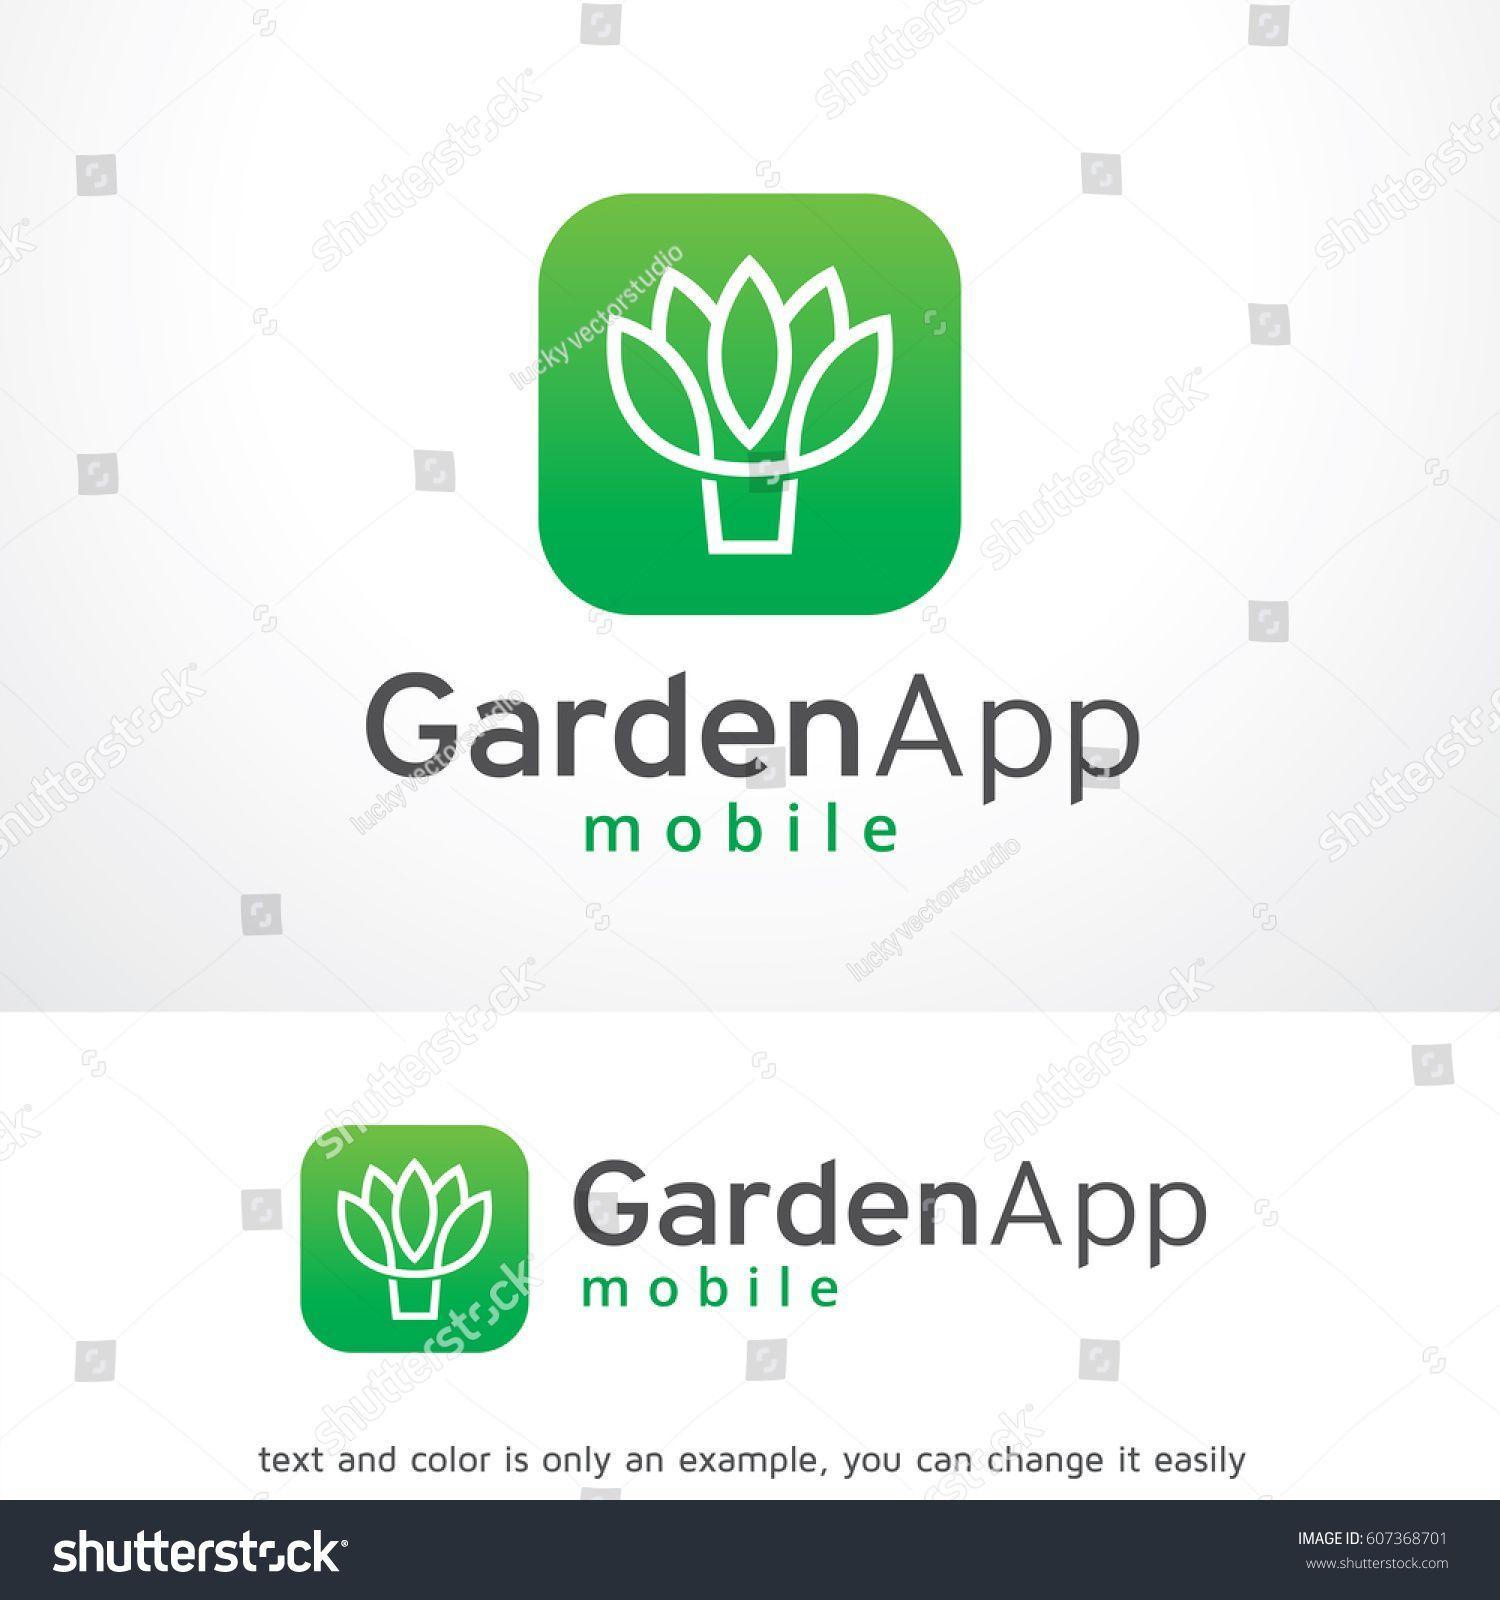 Stocks App Logo - Garden App Logo Template Vector Design Stock Vector (Royalty Free ...